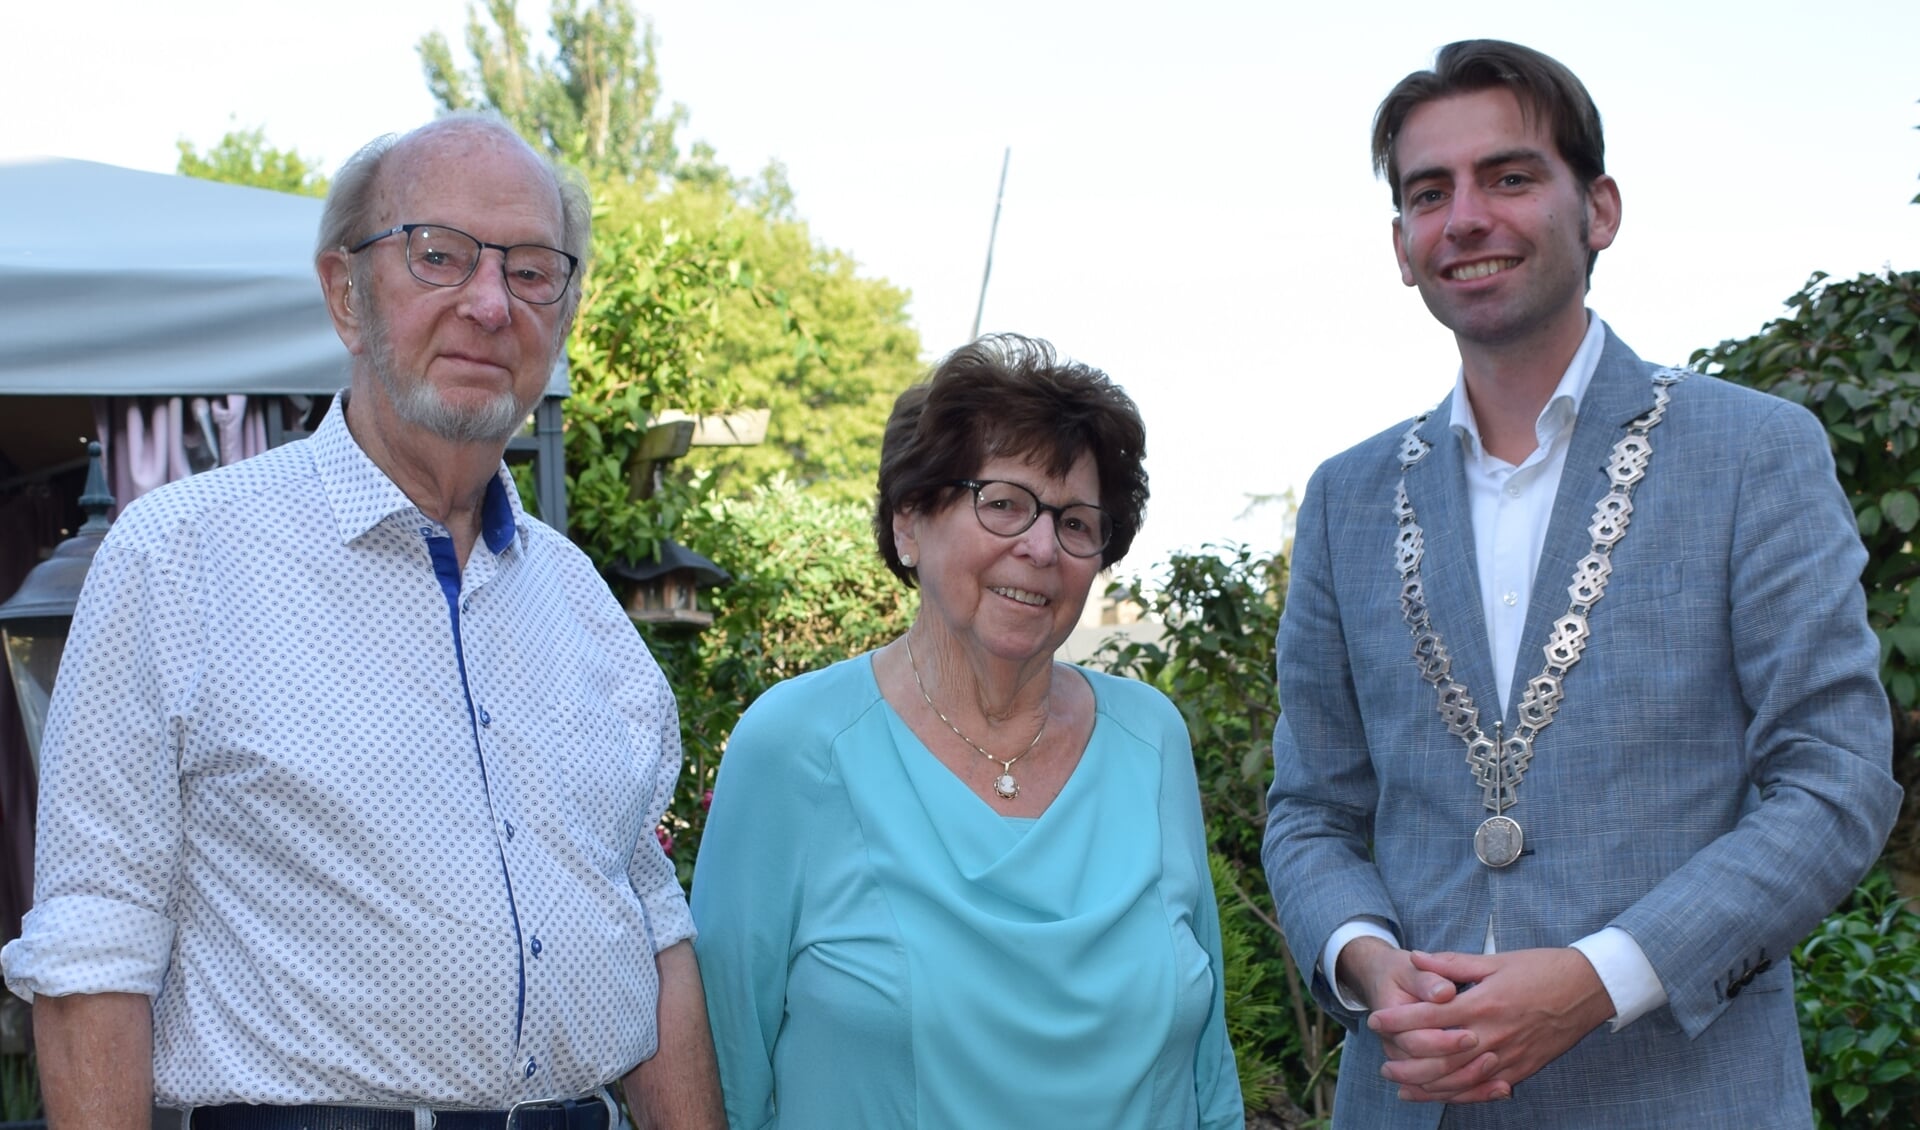 Loco-burgemeester Paul Hofman van de gemeente Bronckhorst kwam het diamanten echtpaar feliciteren. Foto: Familie Schepers.